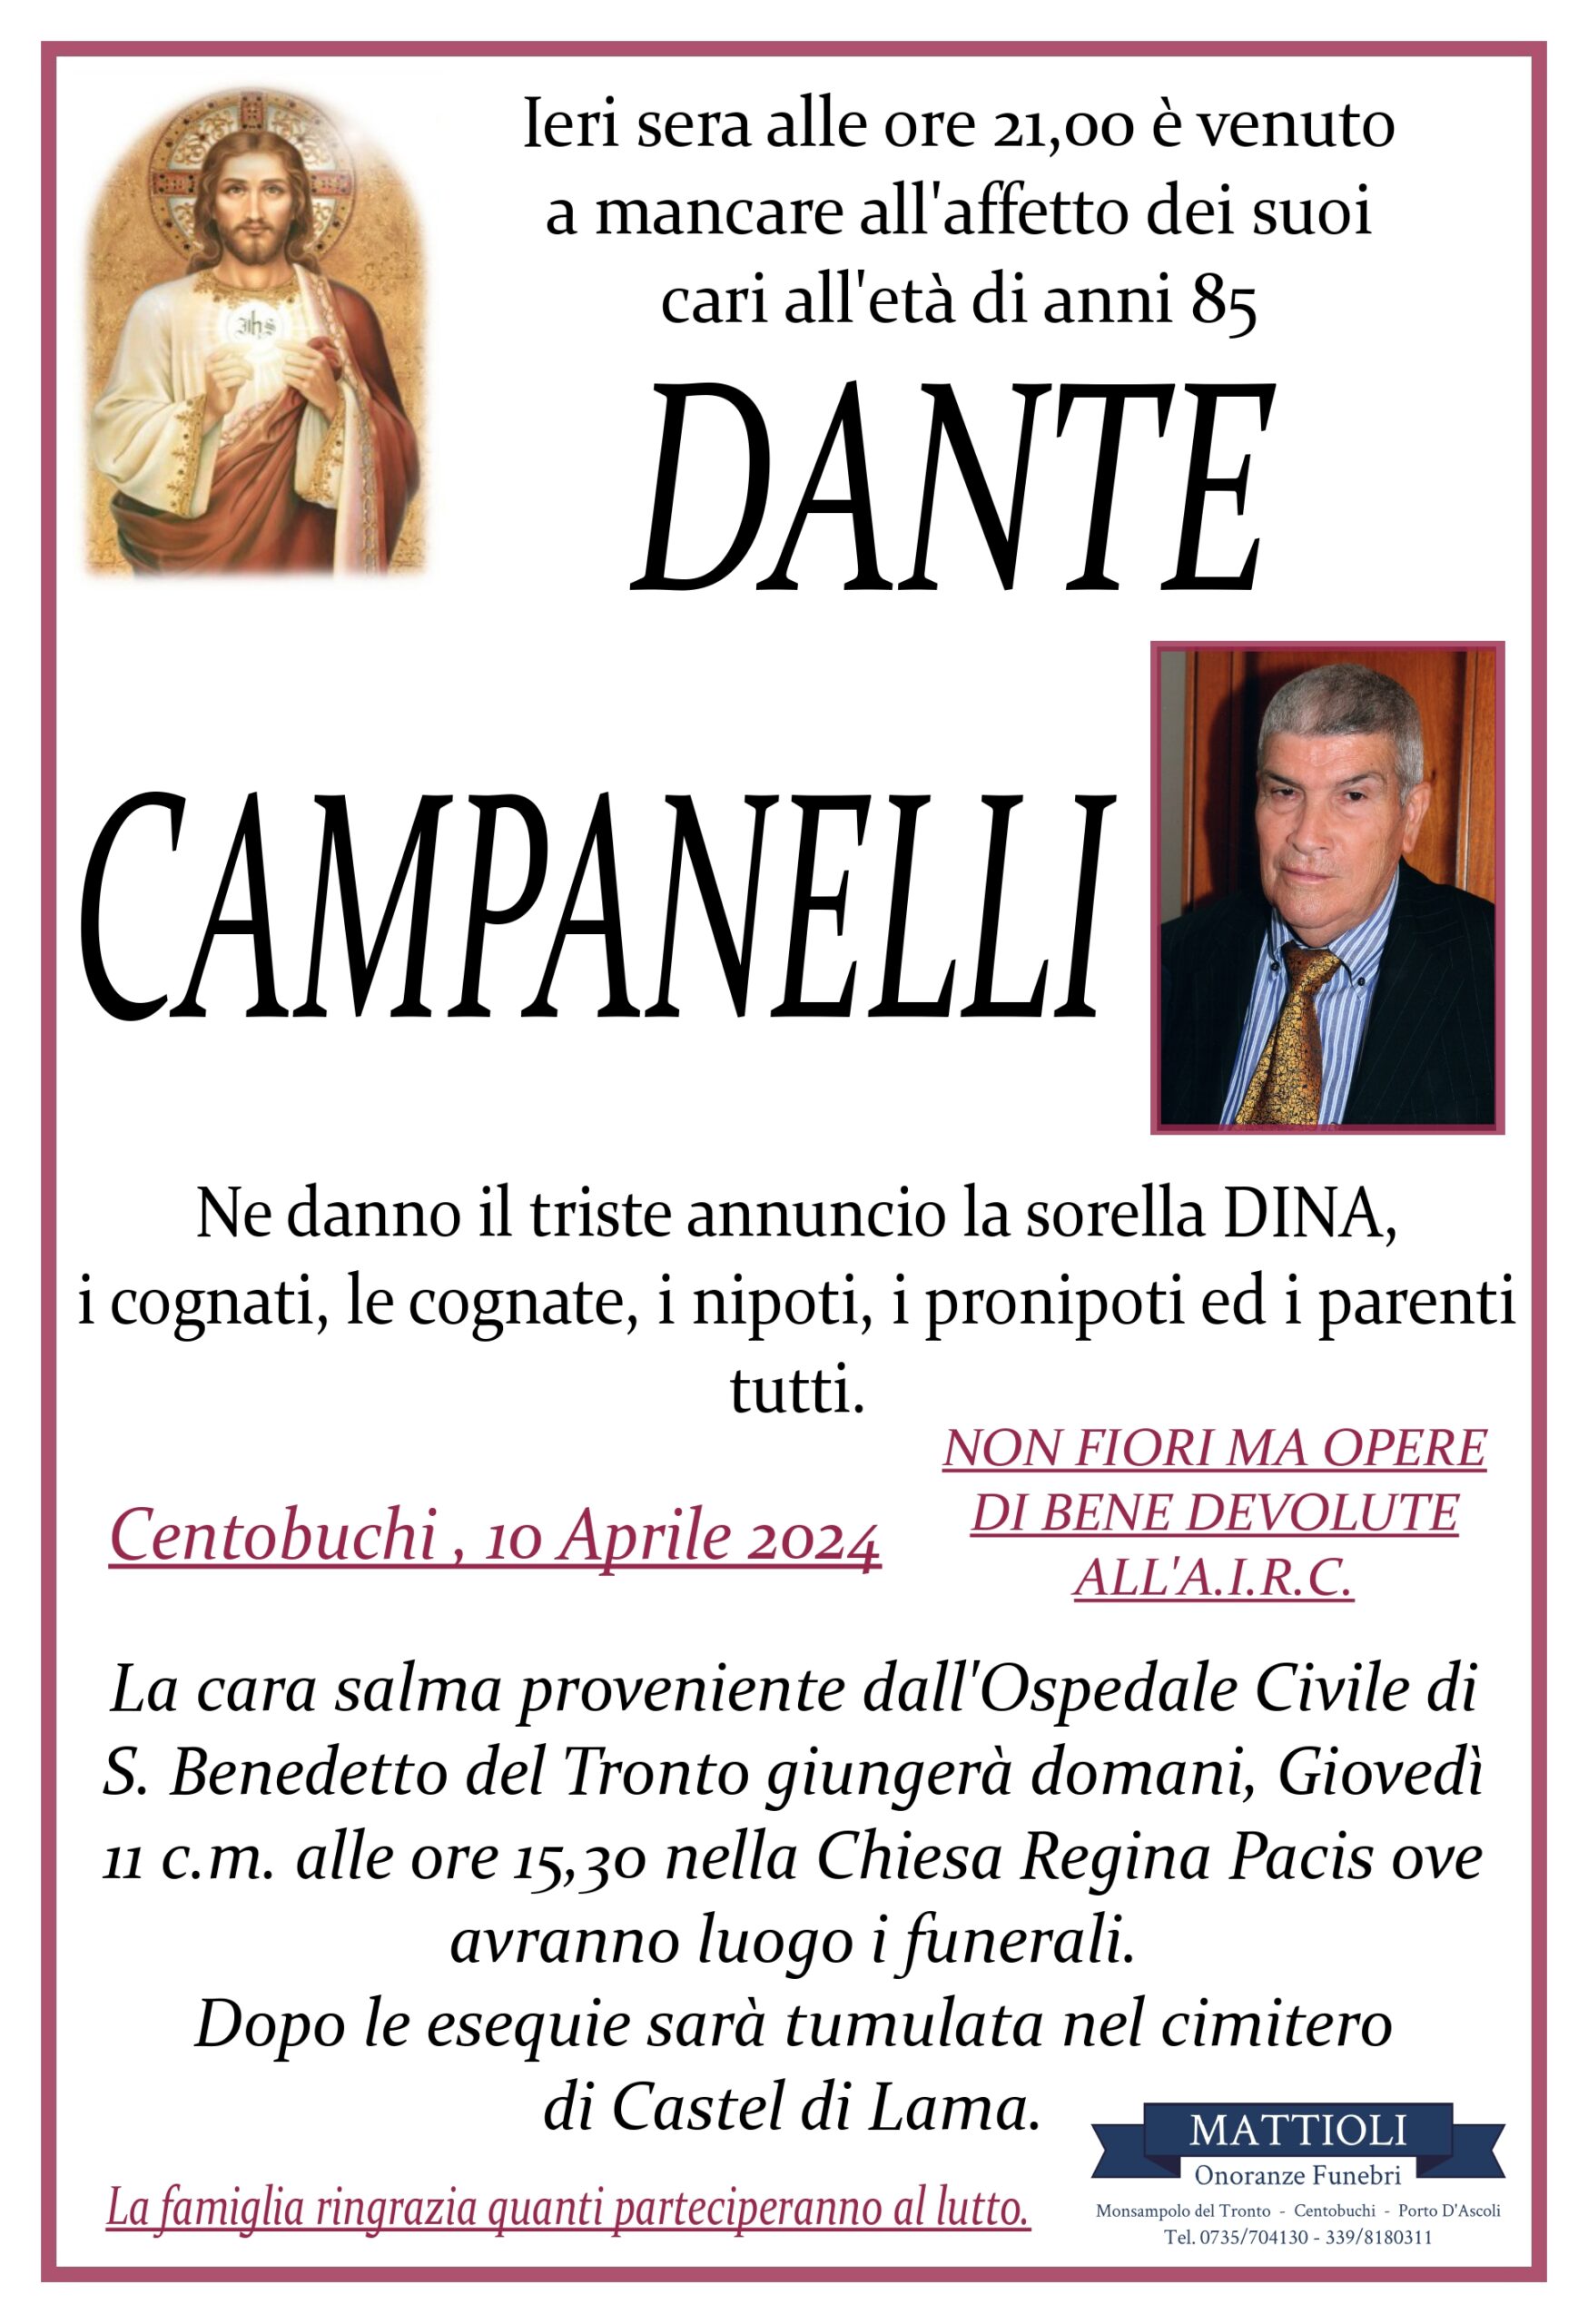 Dante Campanelli